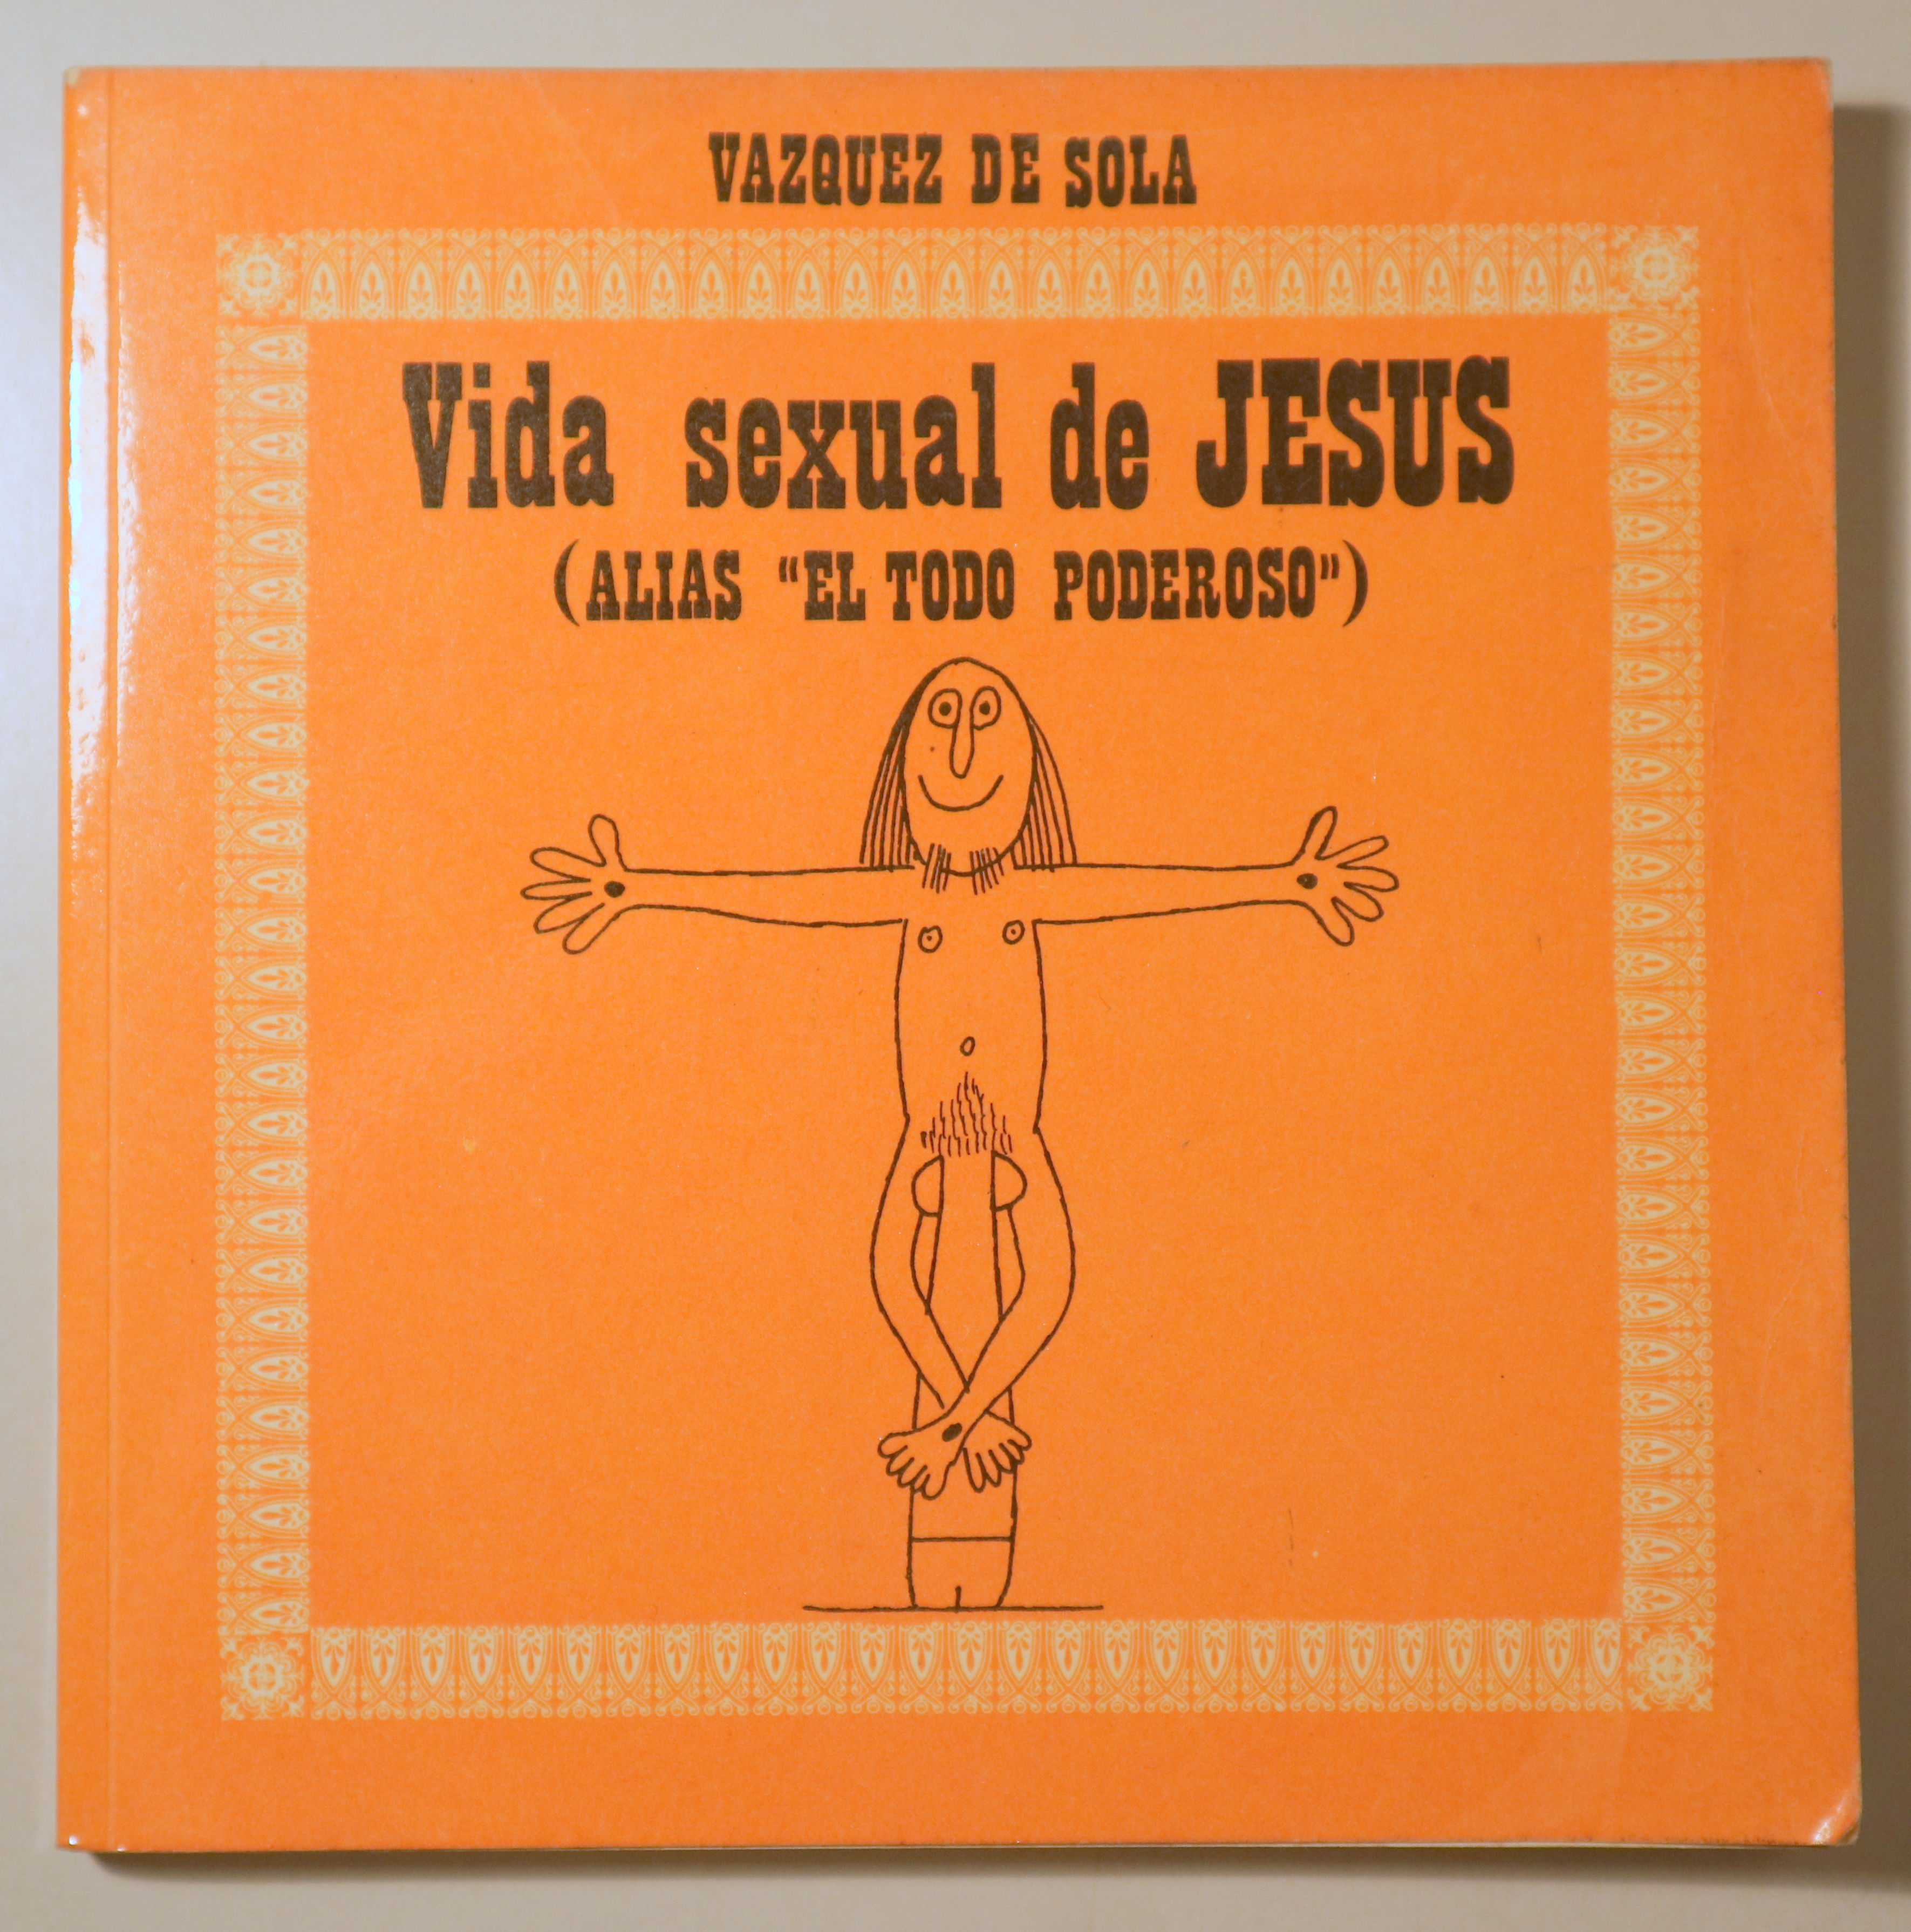 VIDA SEXUAL DE JESUS (ALIAS "EL TODO PODEROSO") - Toulouse 1975 - Muy ilustrado